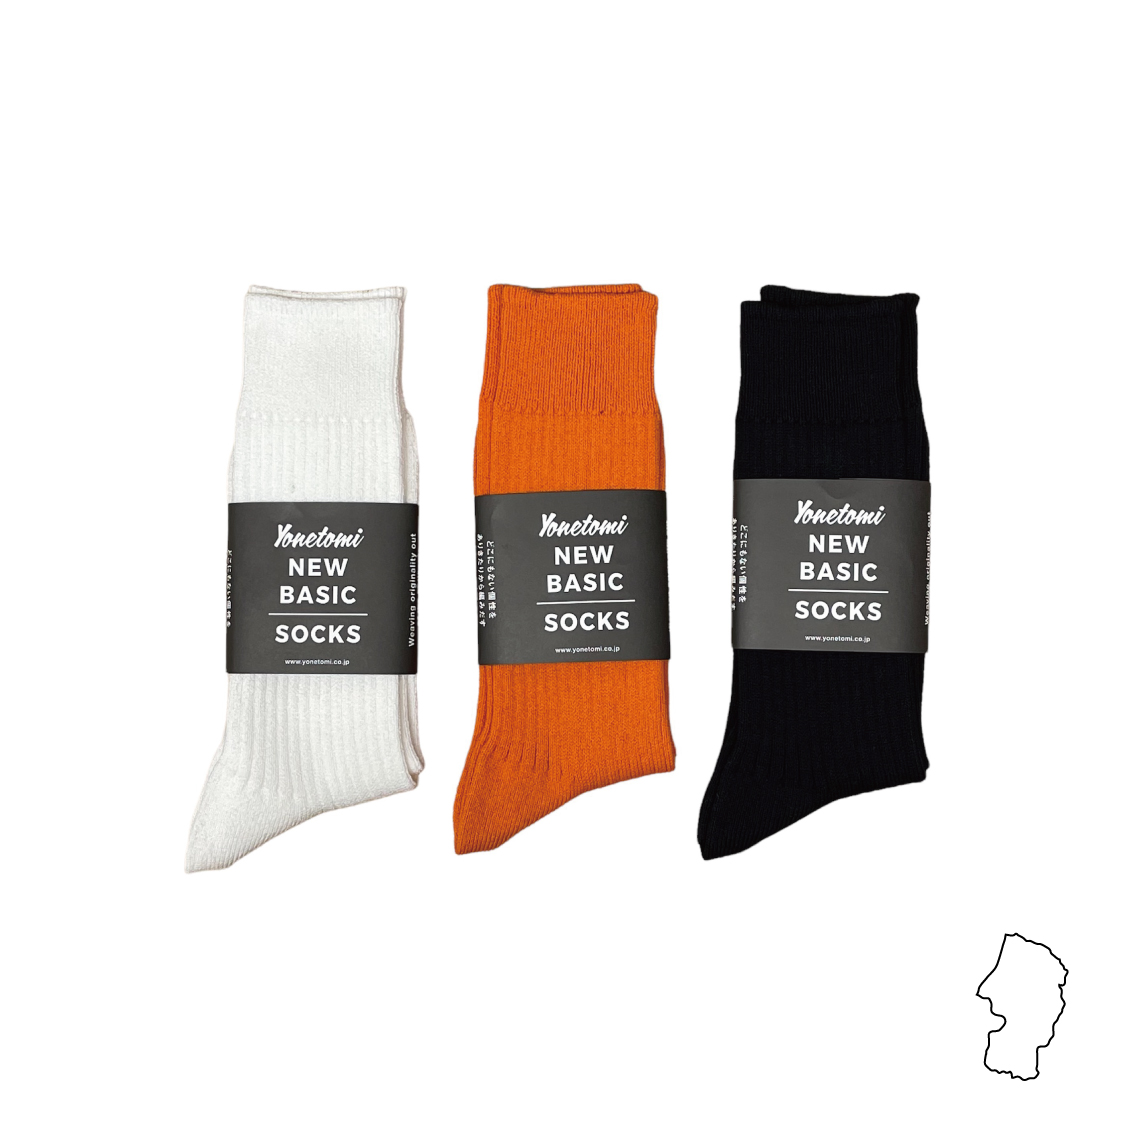 靴下 ニット編みの技術によるズレにくい靴下 [山形] afugi (オウギ) -日本製の生活雑貨を産地から届ける通販サイト-